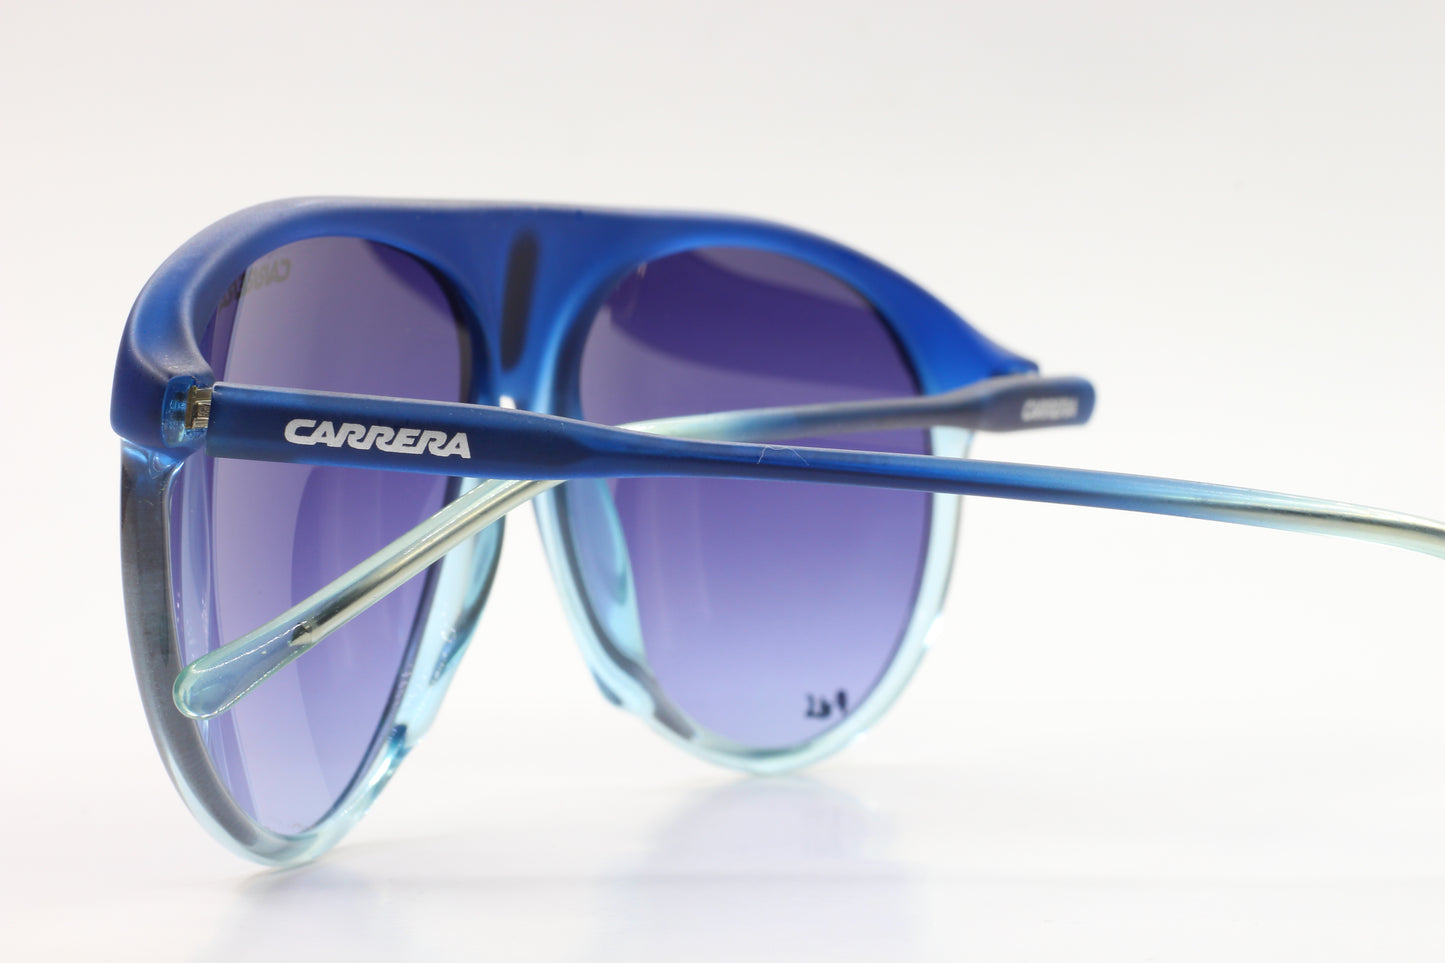 Carrera 29/S 0XAR Y5 Aqua Blue Gradient Pilot Luxury Sunglasses - ABC Optical